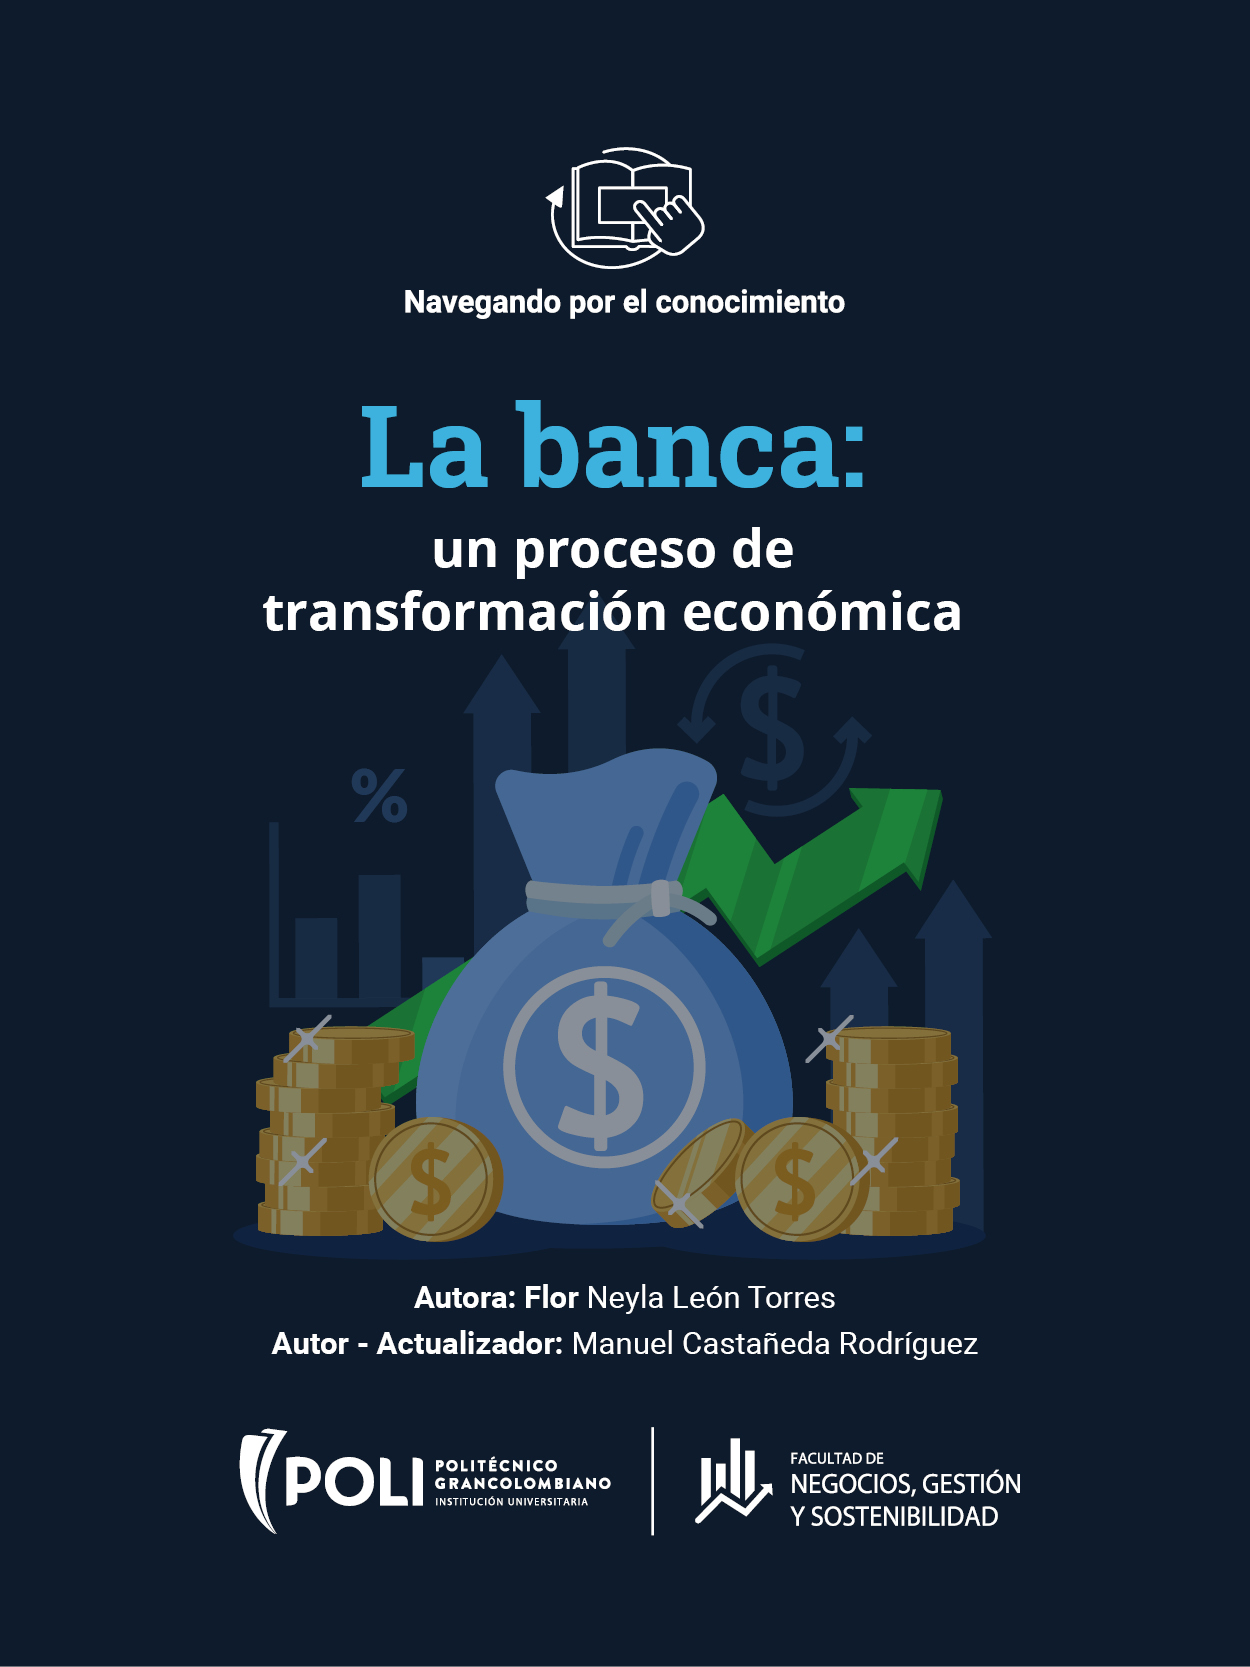 La banca, un proceso de transformación económica